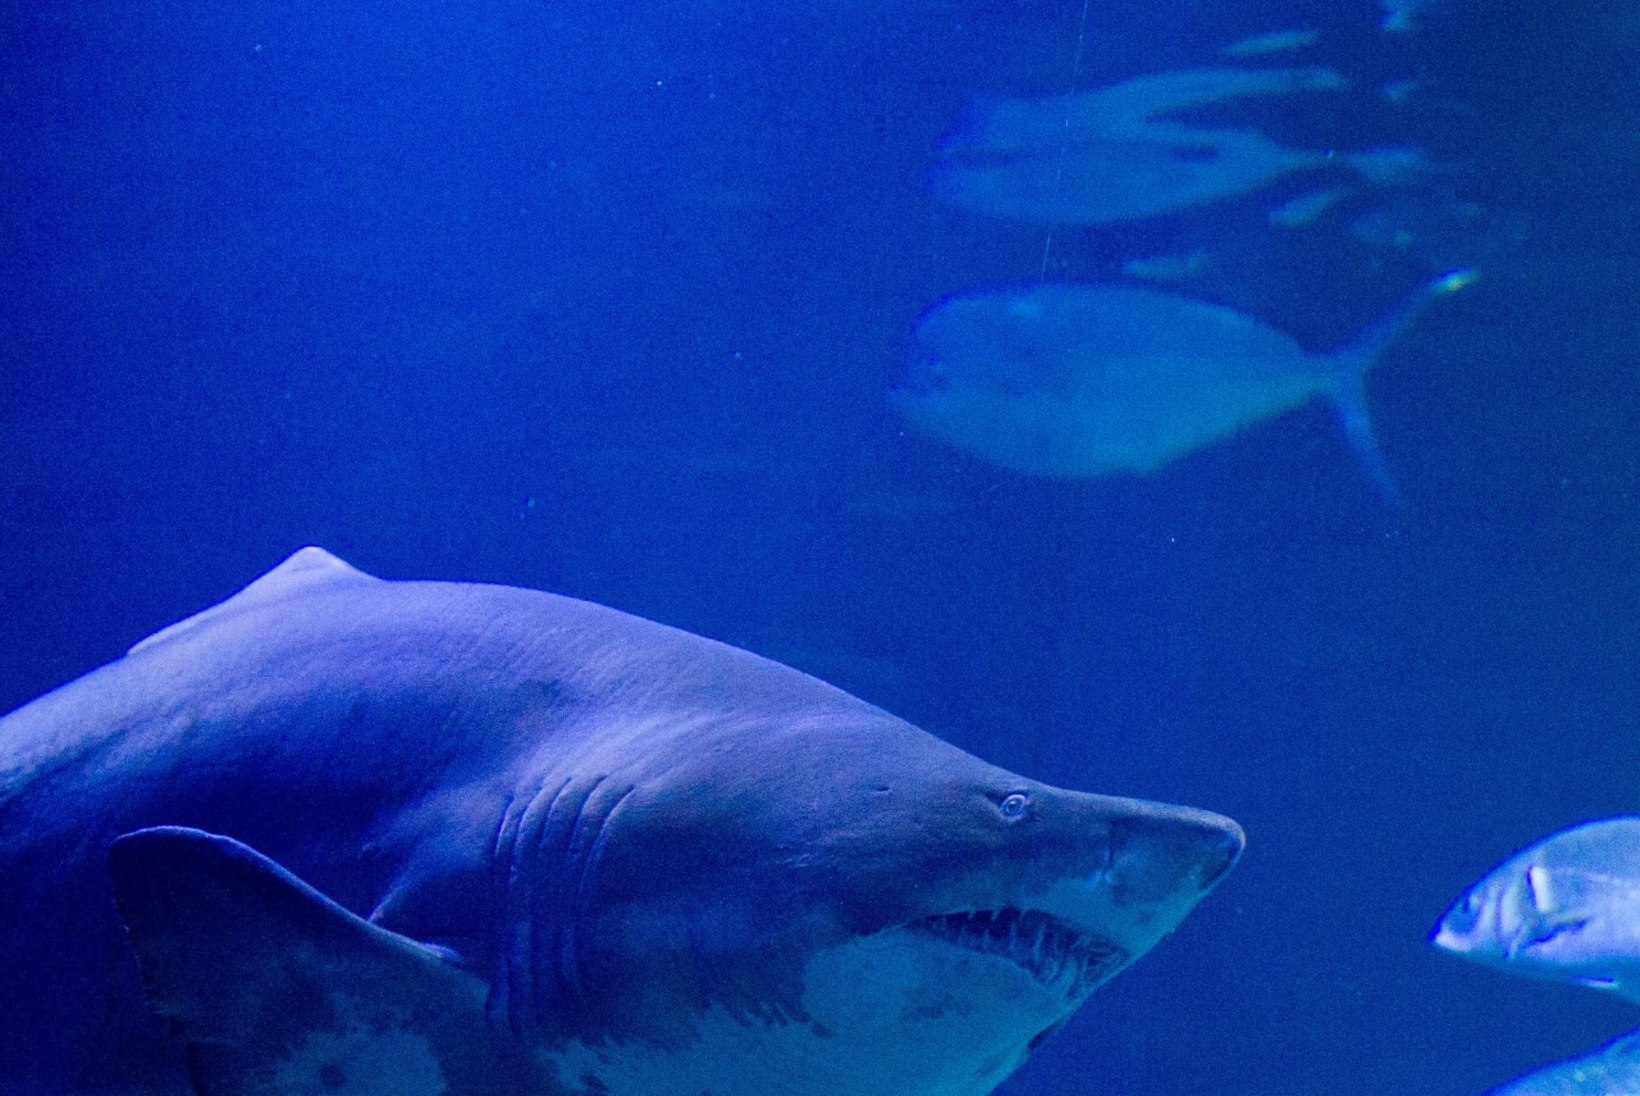 AKVAARIUMI TÖÖTAJAD ŠOKIS: suurem hai üritas väiksemat ära süüa ja sülitas ta 40 minutit hiljem elusana välja